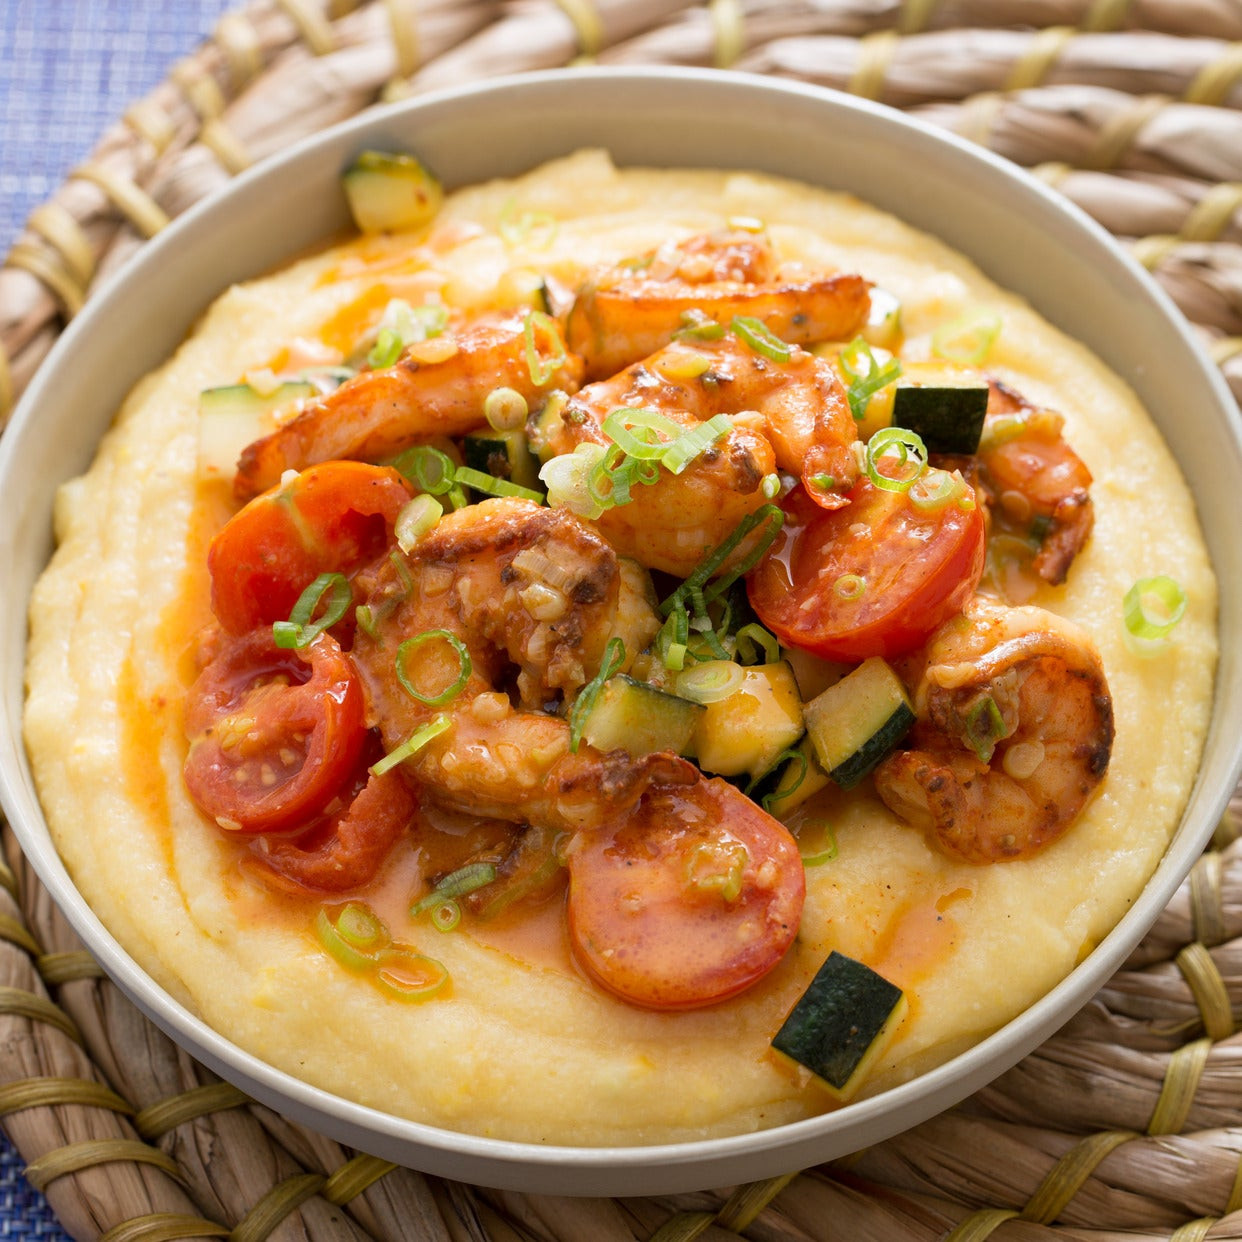 Recipes For Shrimp And Grits
 Shrimp Quinoa "Fried Rice" with Asparagus & English Peas